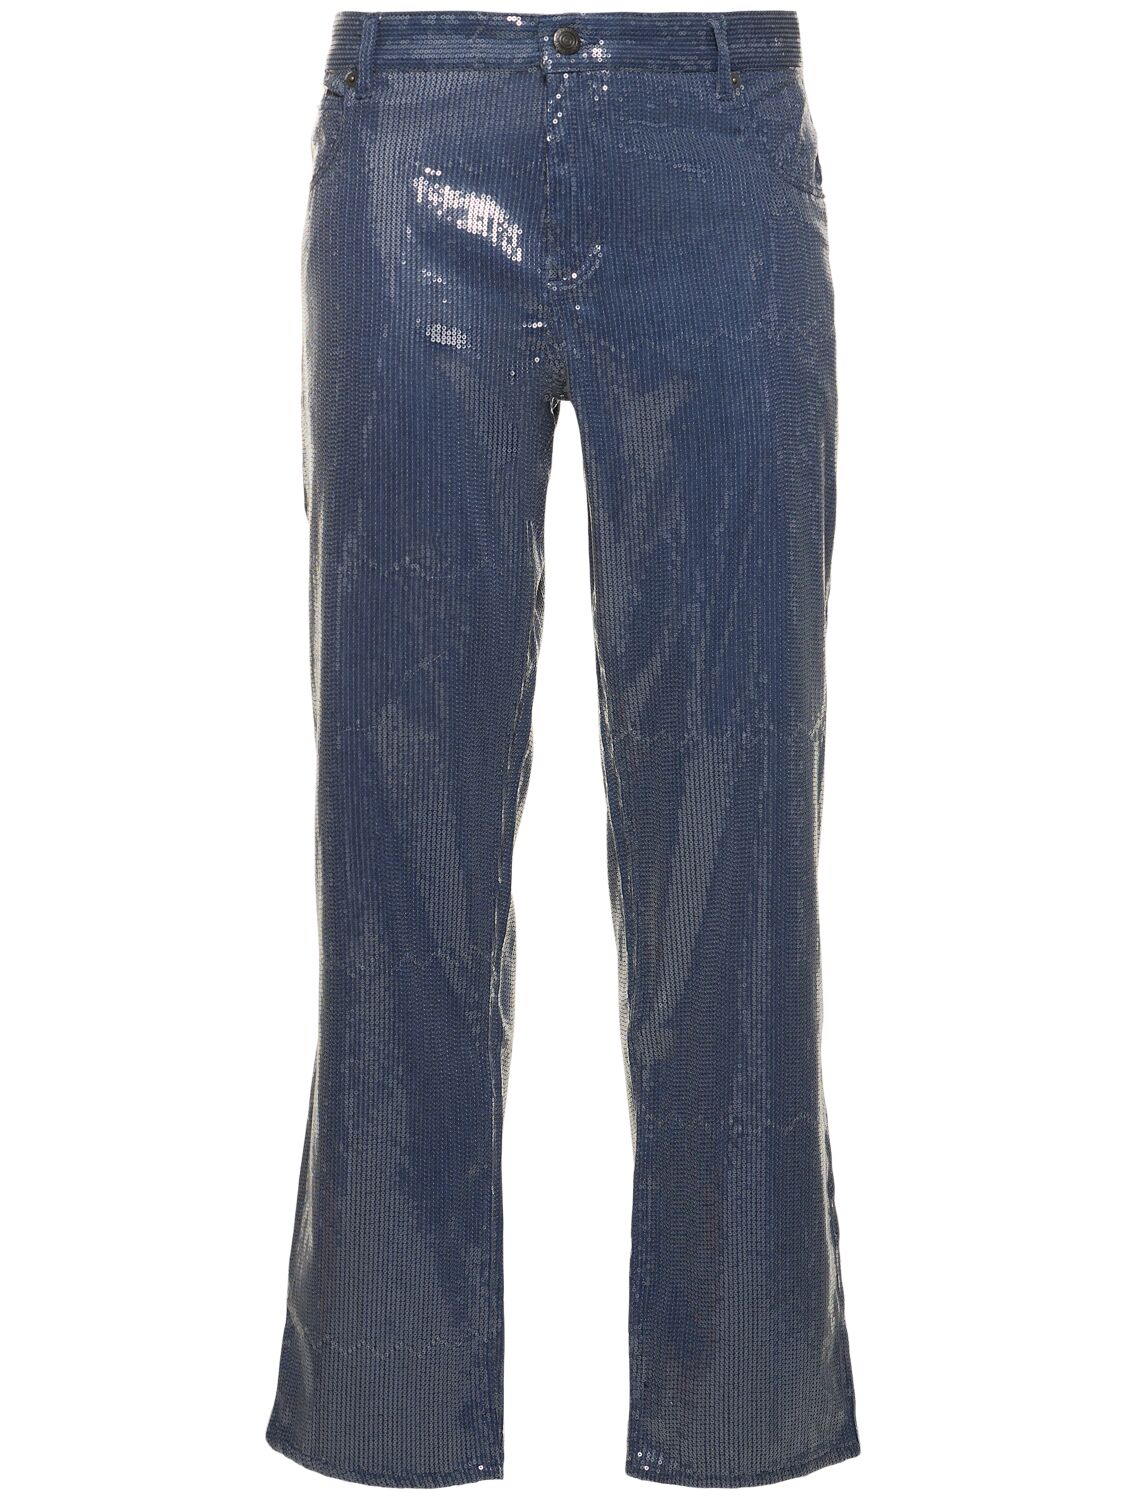 Art Cotton & Viscose Denim Jeans